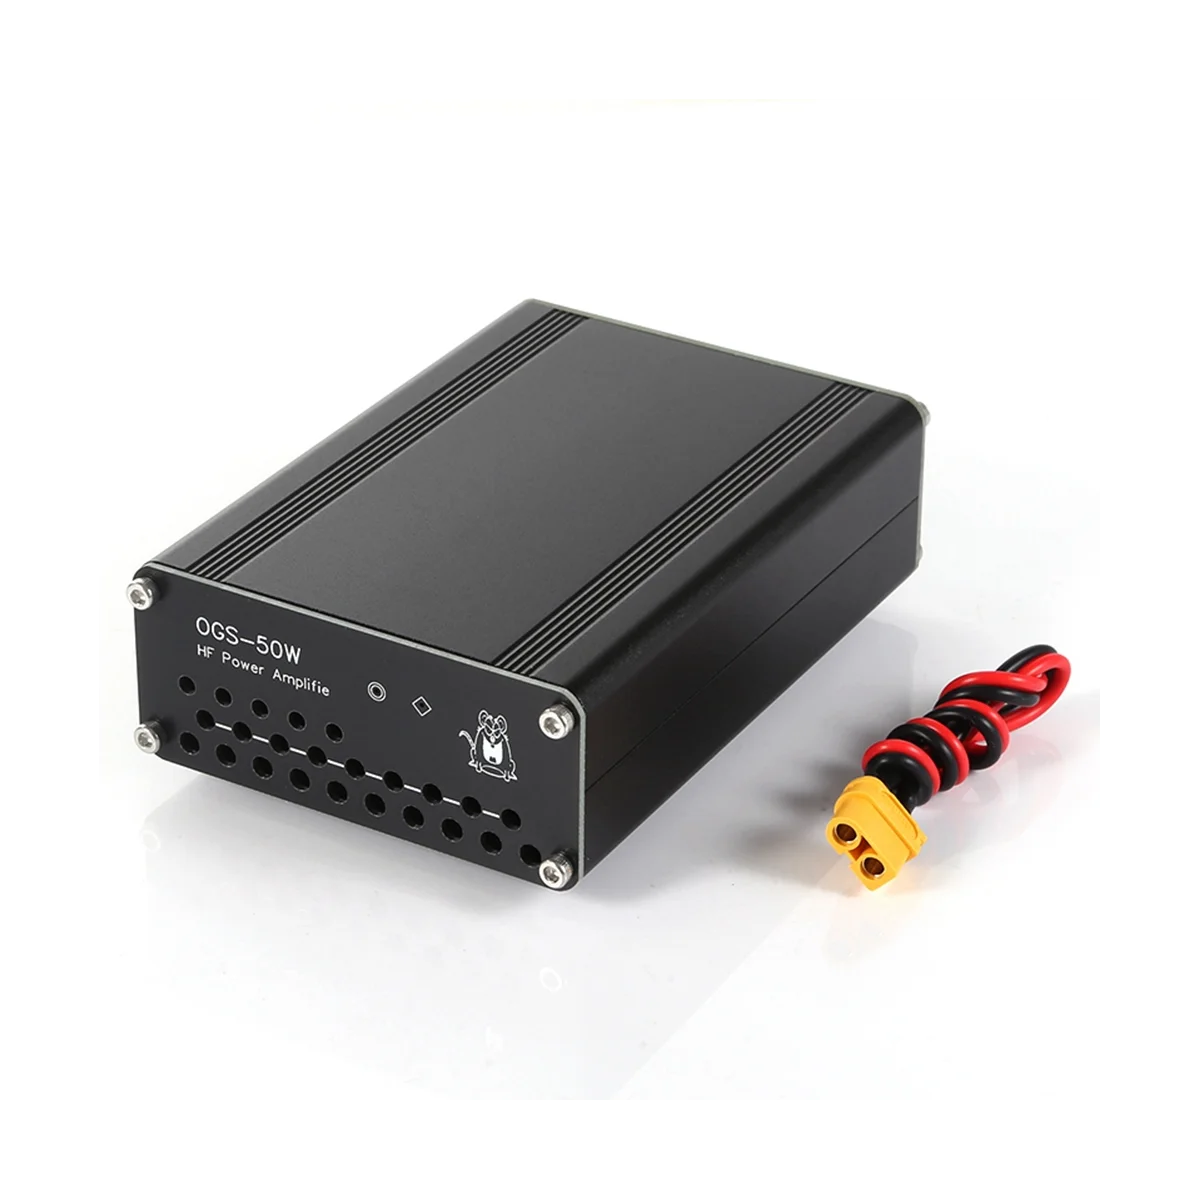 

OGS-50W 50W HF Power Amplifier for USDX FT-817 ICOM IC-703 IC-705 IC705 Elecraft KX3 QRP FT-818 Xiegu G90 G90S G1M X5105